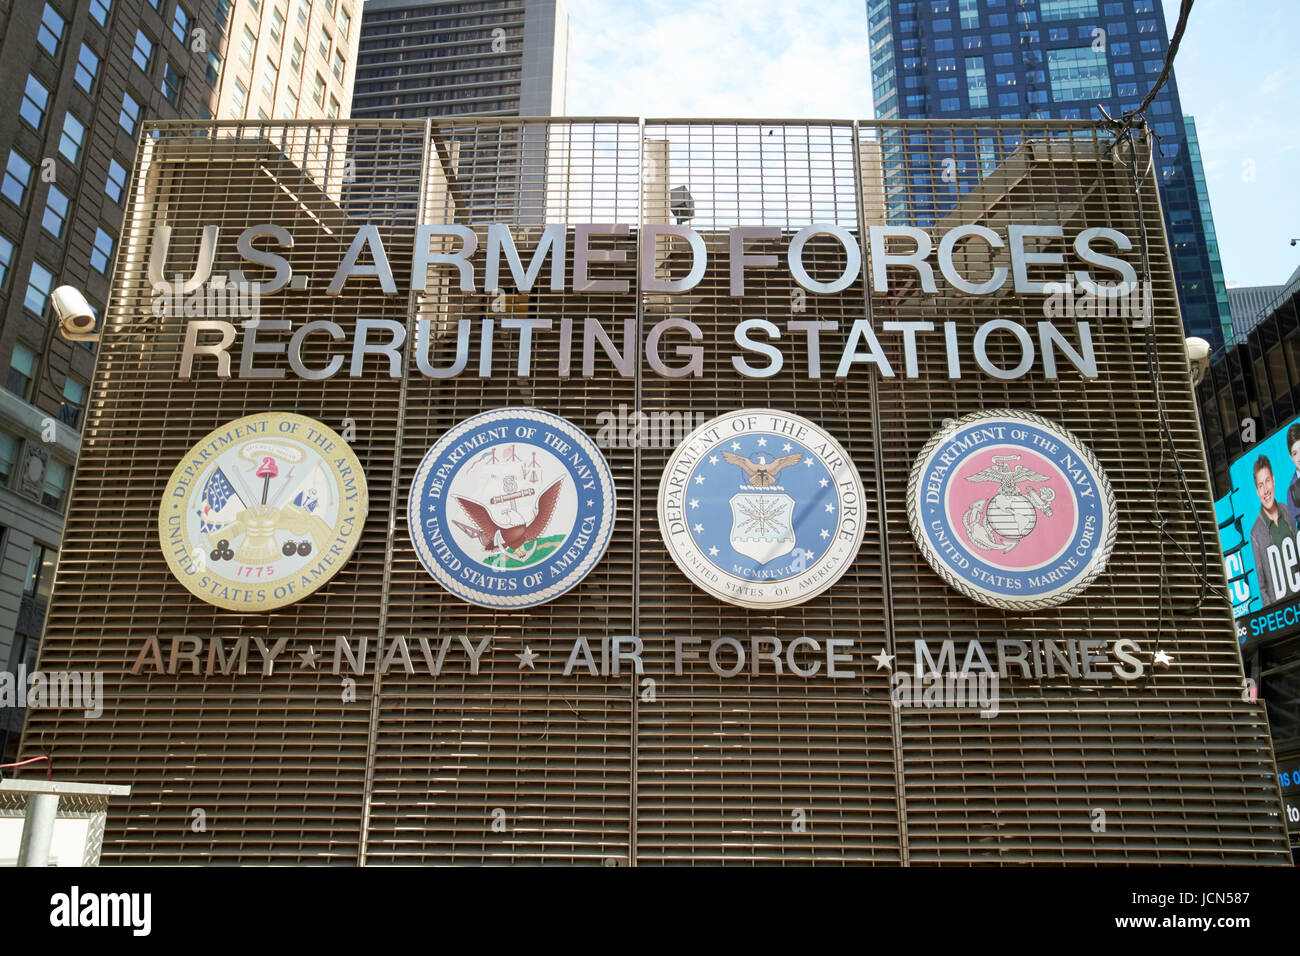 La estación de reclutamiento de las fuerzas armadas de Estados Unidos Times Square de Nueva York, EE.UU. Foto de stock